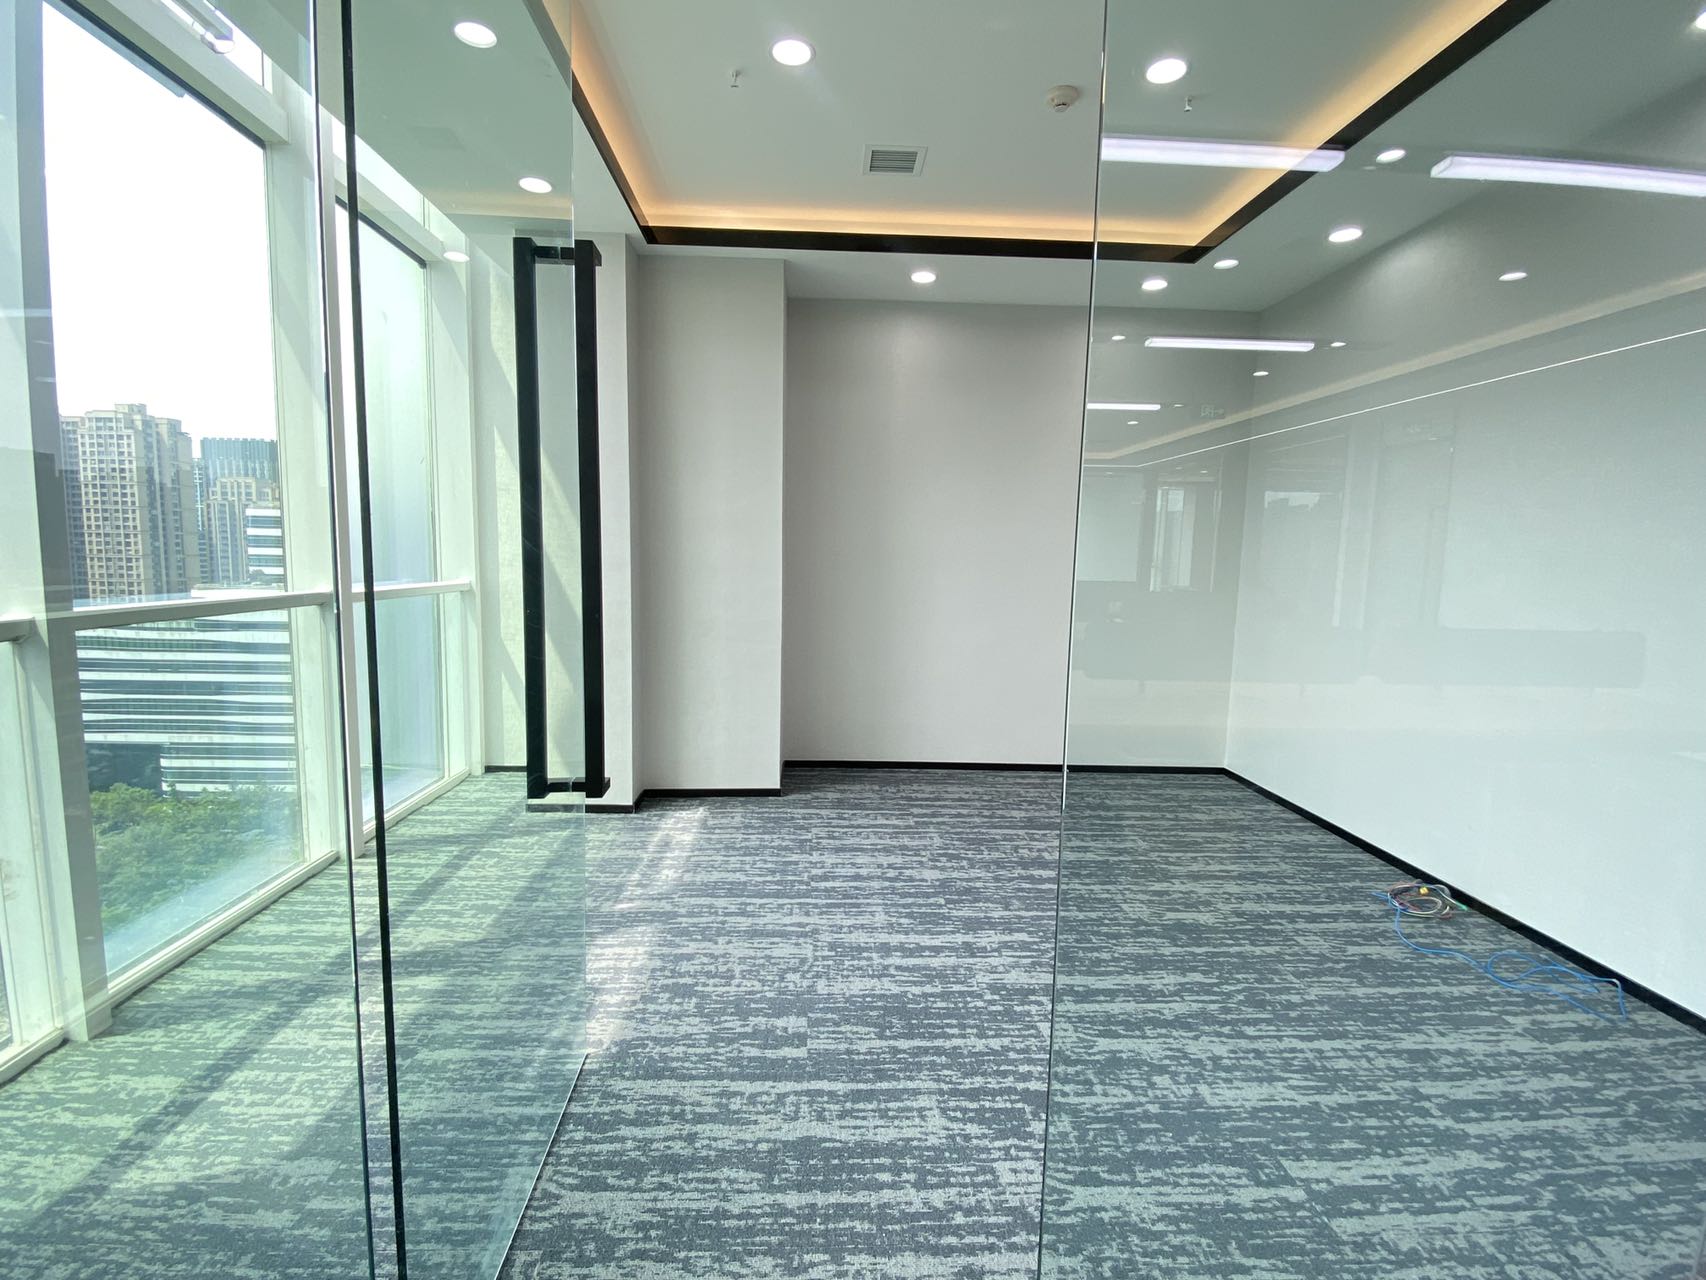 高新区天府三街莱普敦中心精装360平办公室带家具 户型方正 采光通透